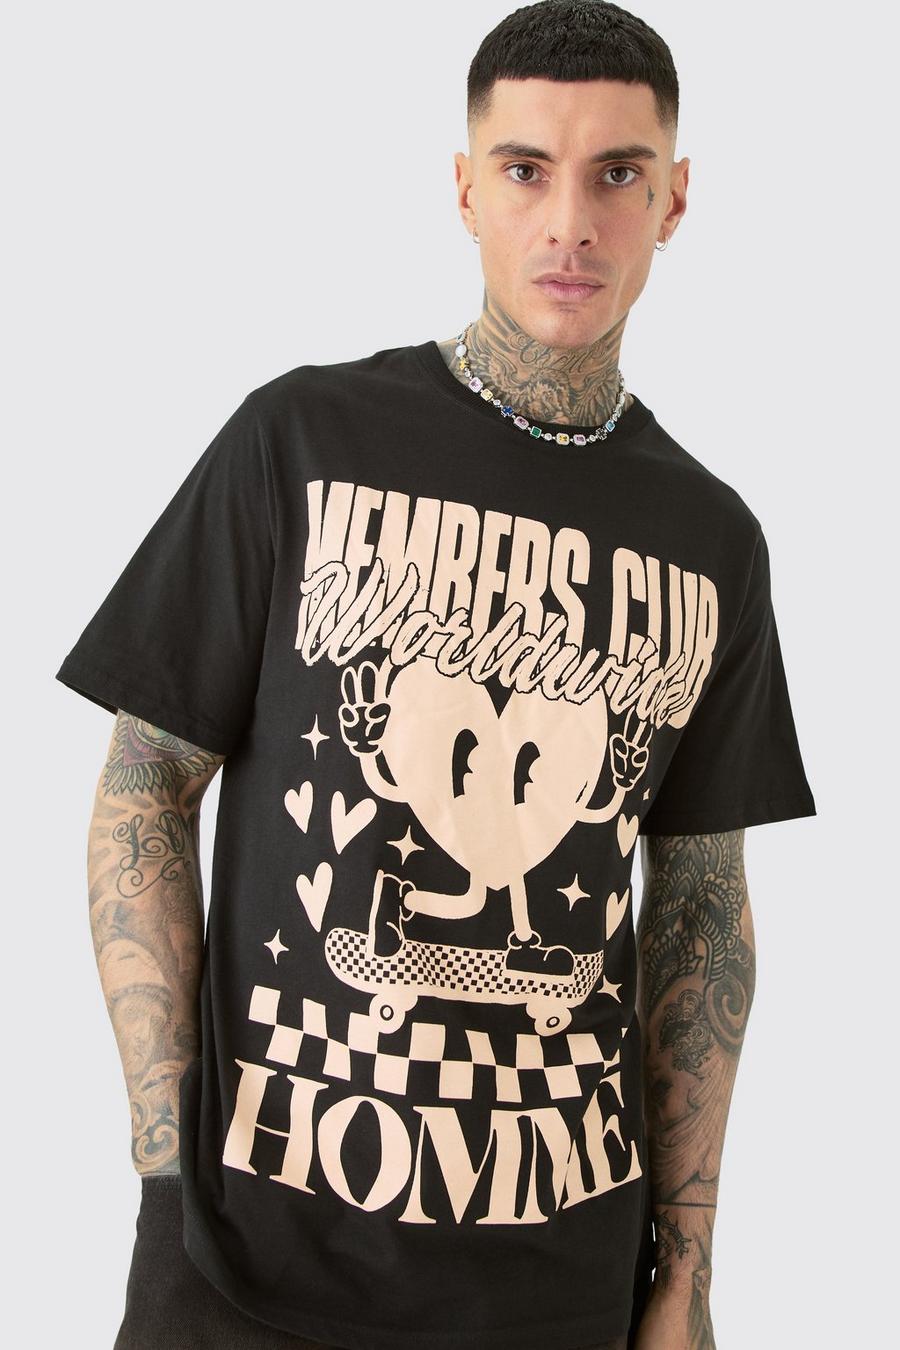 Tall schwarzes T-Shirt mit Members Club Worldwide Print, Black